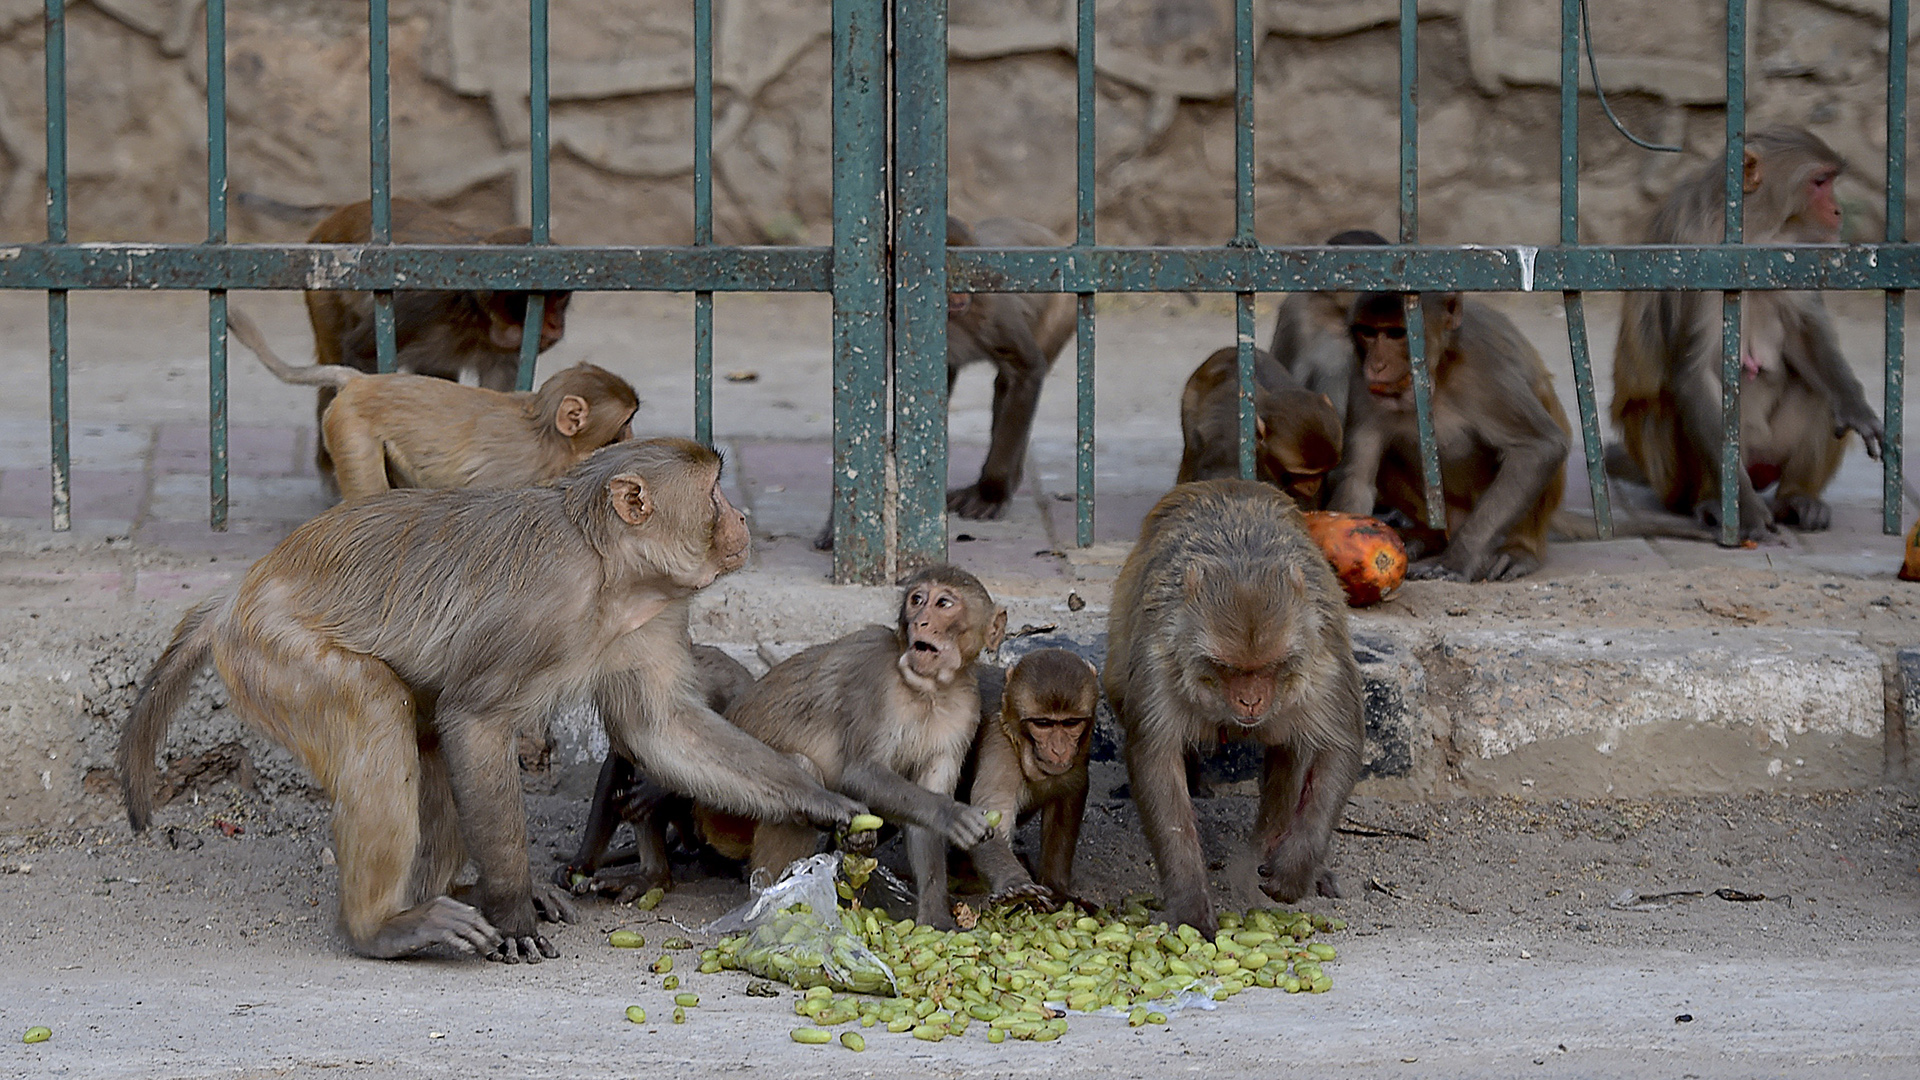 Los monos empezaron una venganza contra los perros después de que uno de ellos matara a una cría de los primates